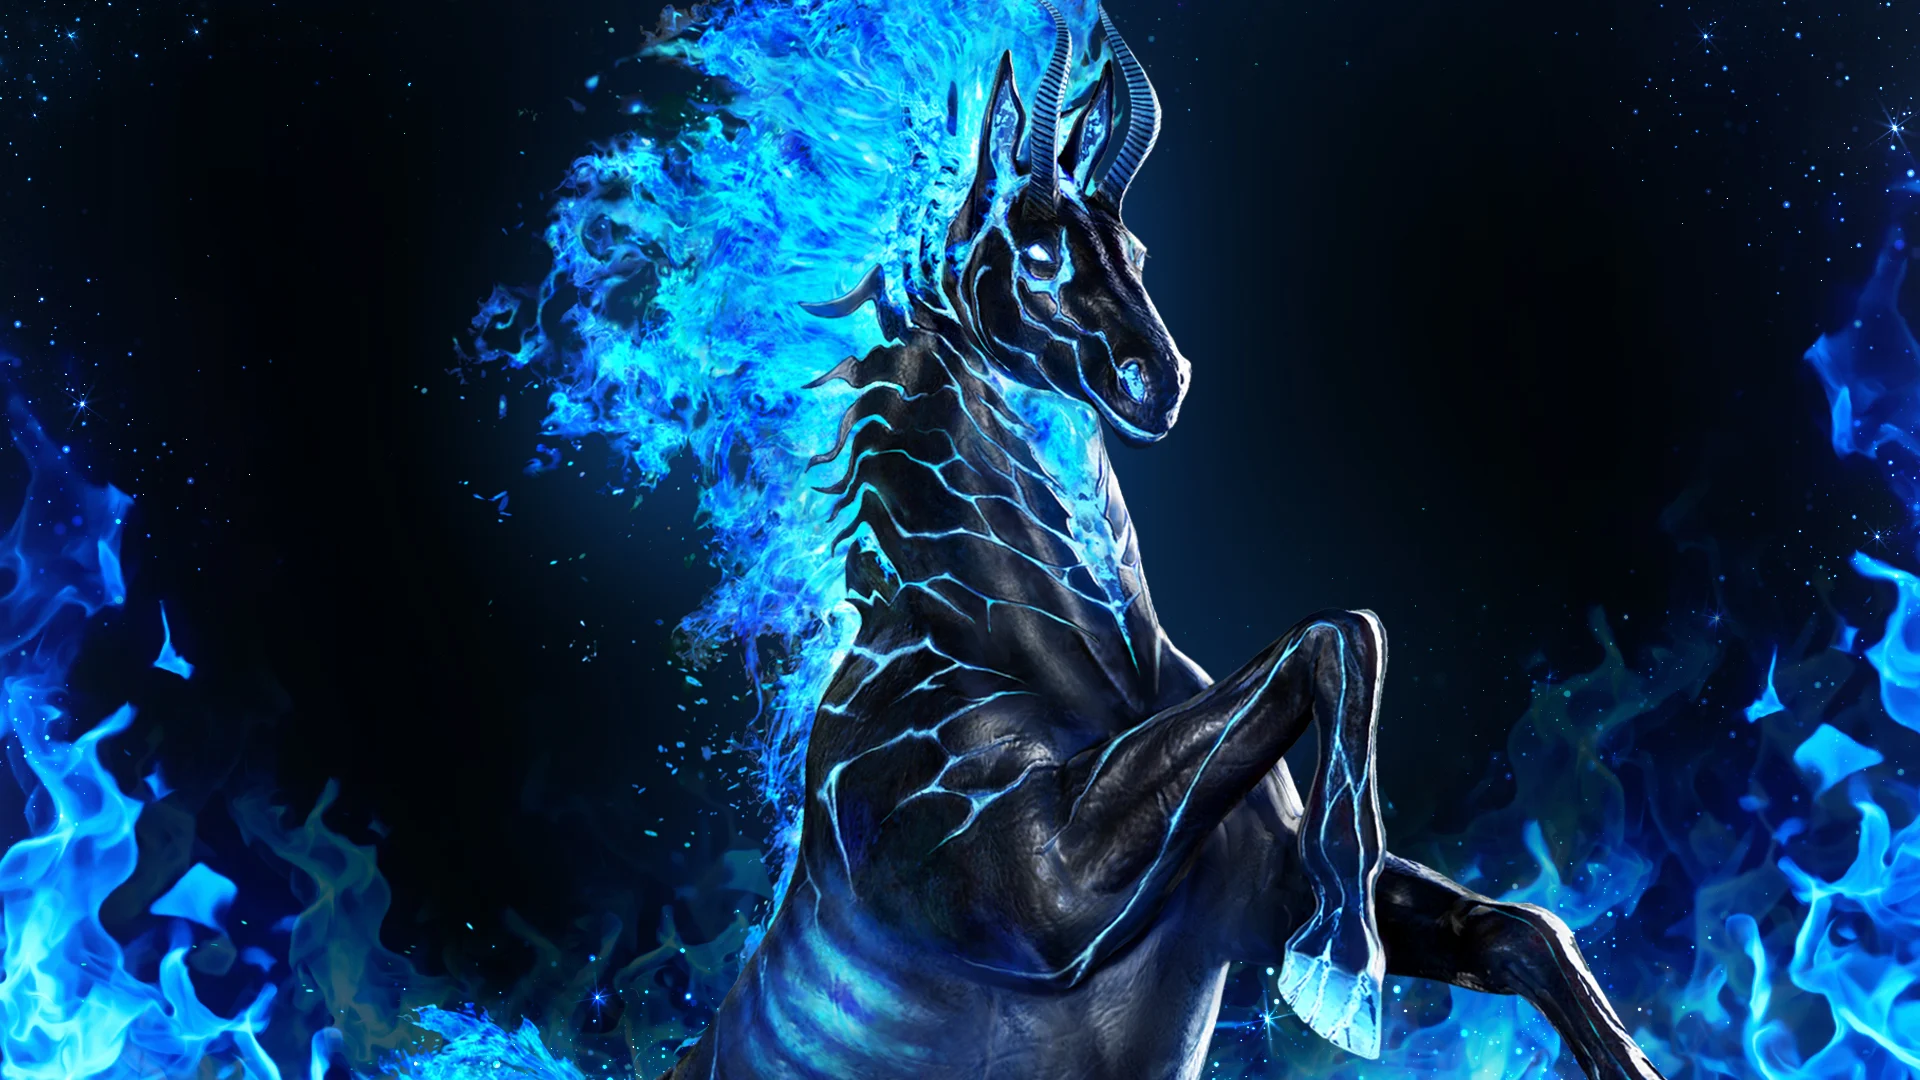 Black Desert Online's Festa Updates Bring Mythical Doom Horse, New PvP Season, and More 6